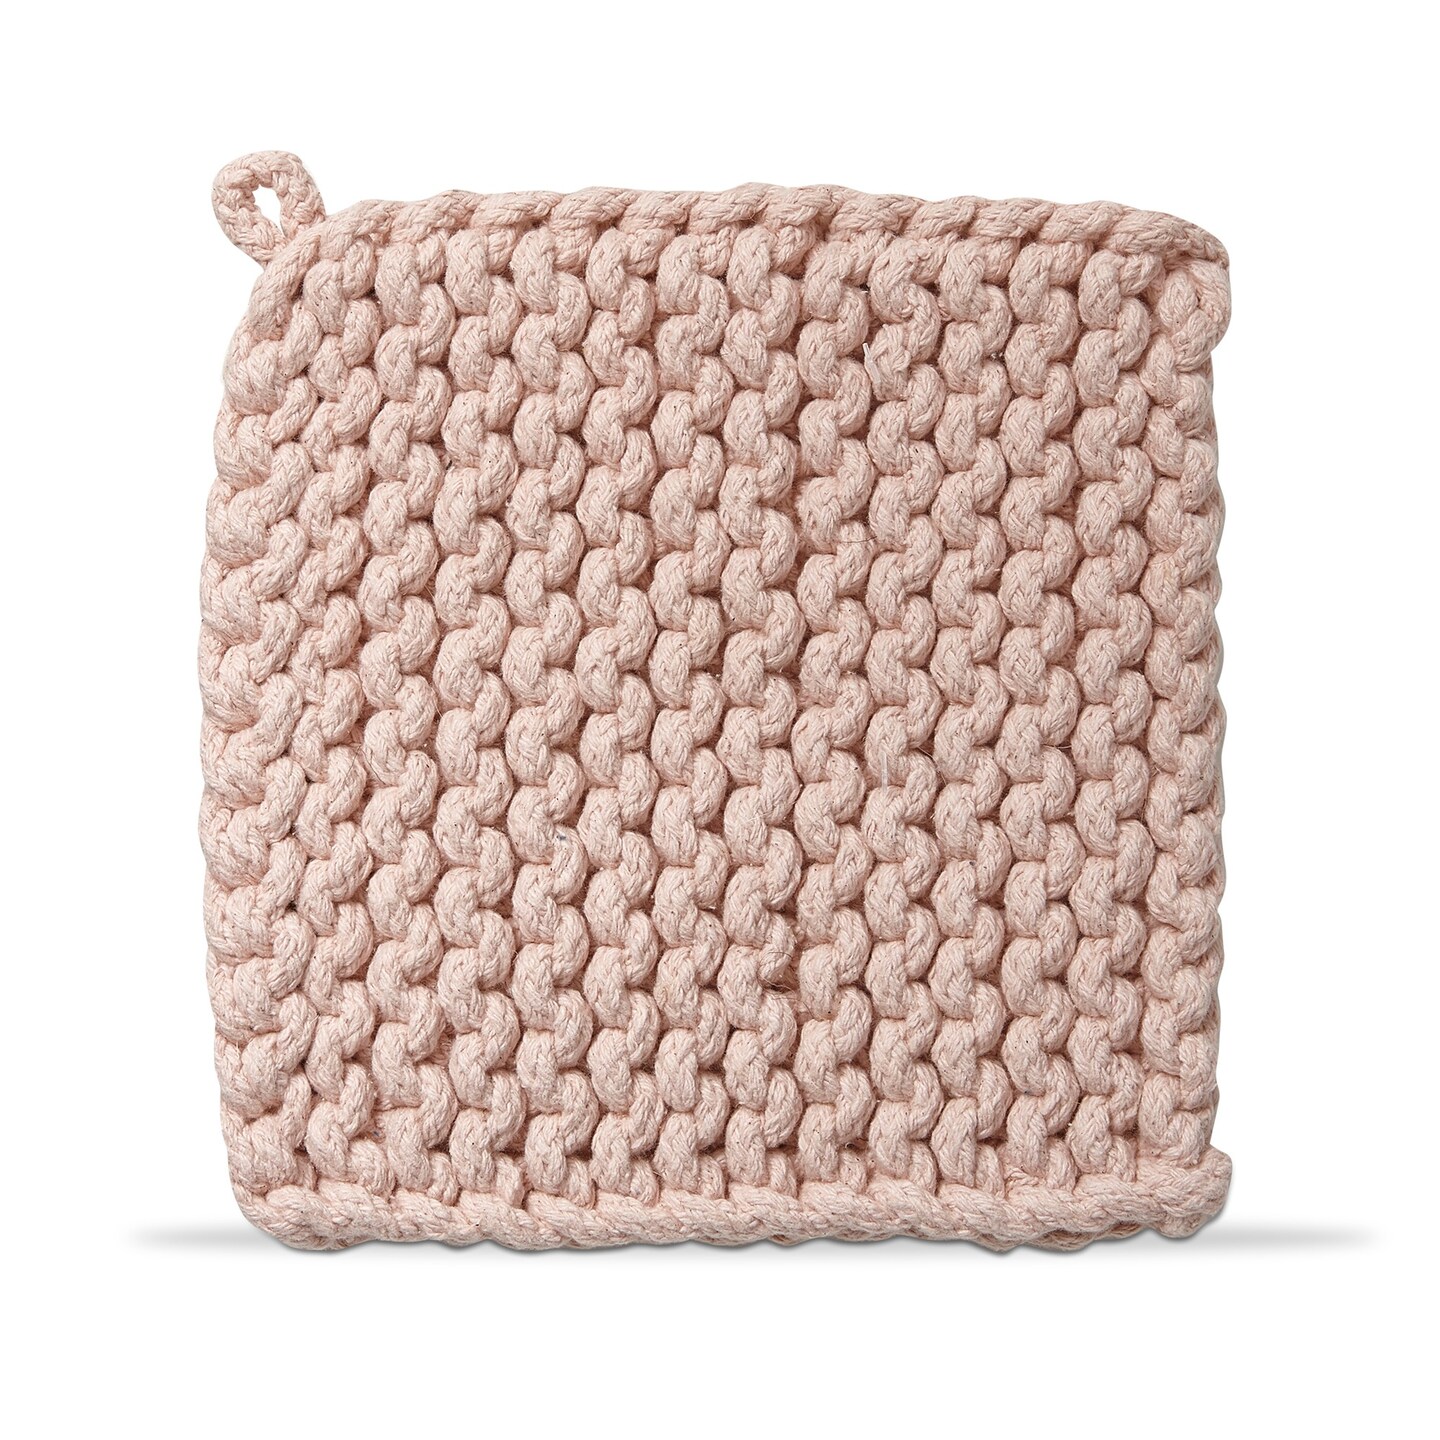 Crochet Trivet Potholder Blush